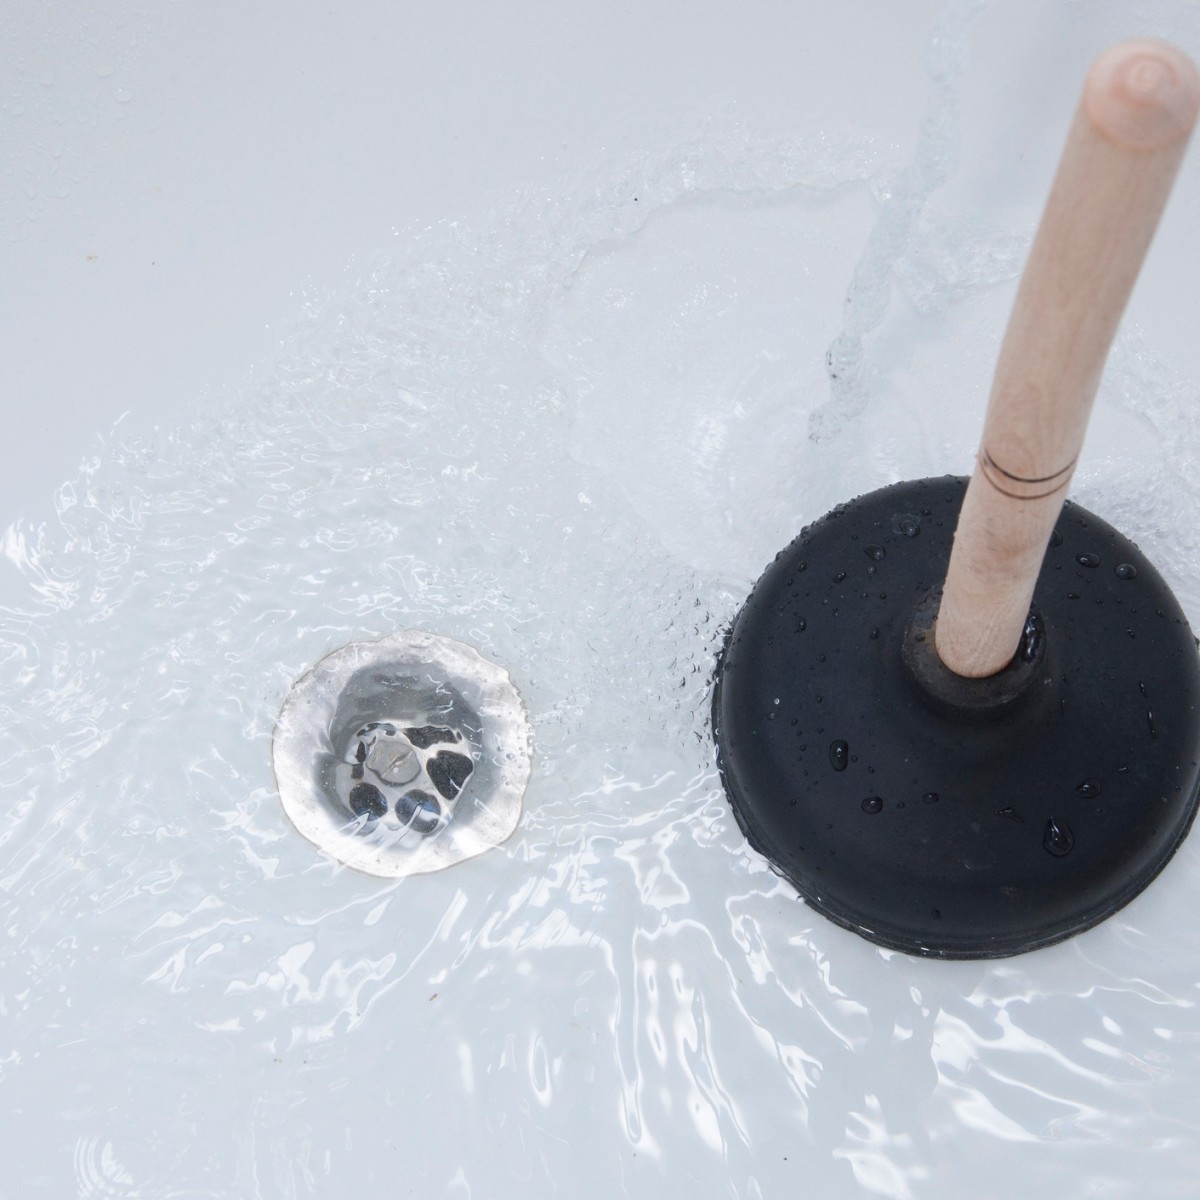 Clearing A Clogged Bathtub Drain, How To Unclog A Bathtub Drain With Bleach